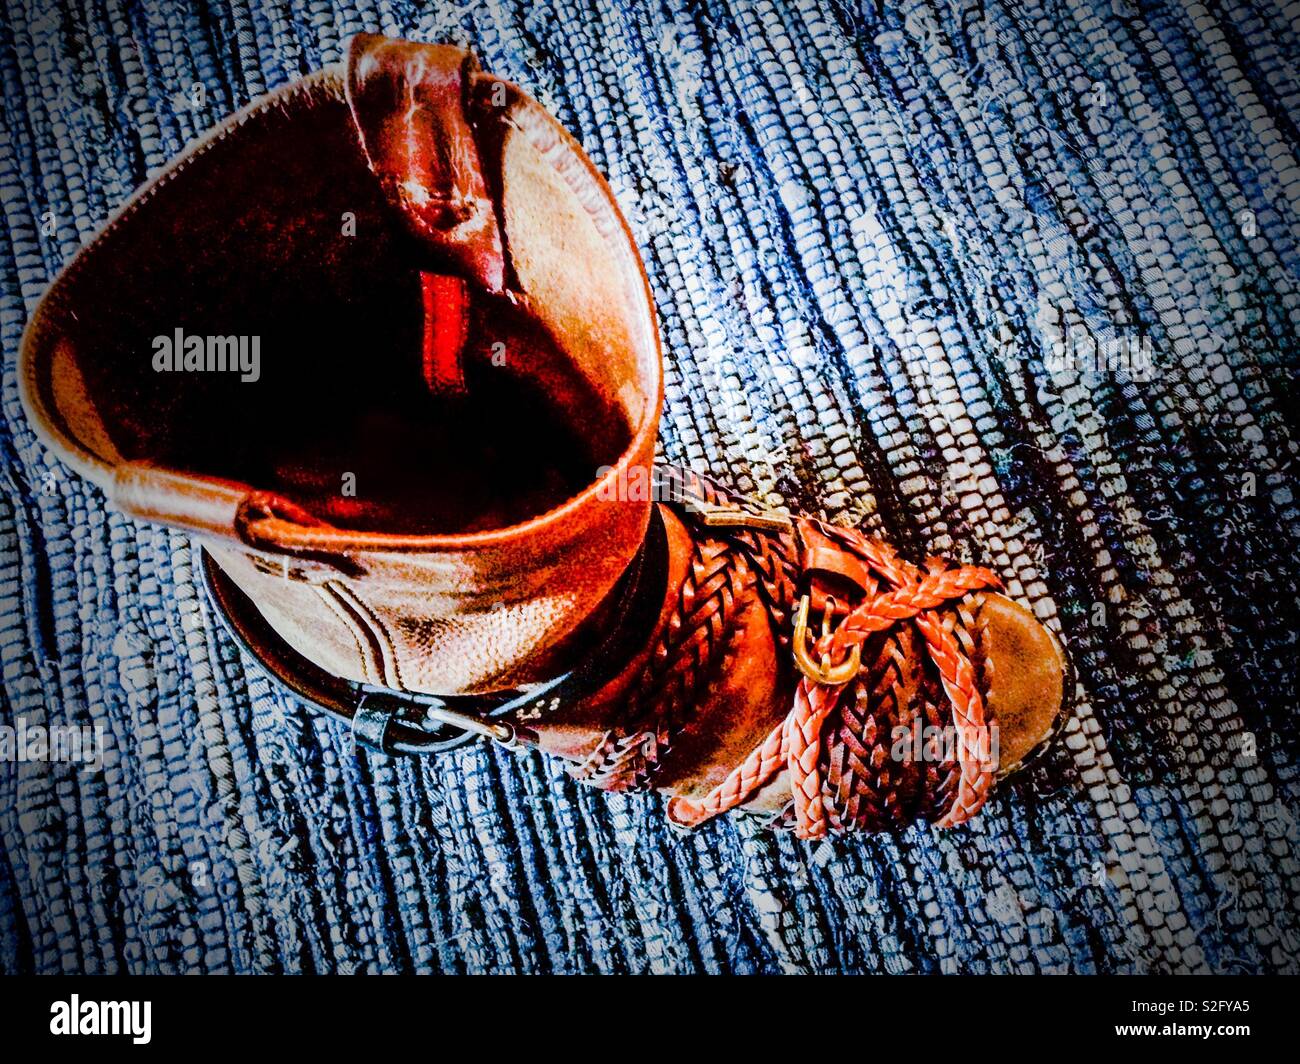 Cowboy-stiefel auf blauen geflochtenen Teppich in Leder Gürtel gewickelt zu  spannen während der Kleber trocknet reparieren Stockfotografie - Alamy